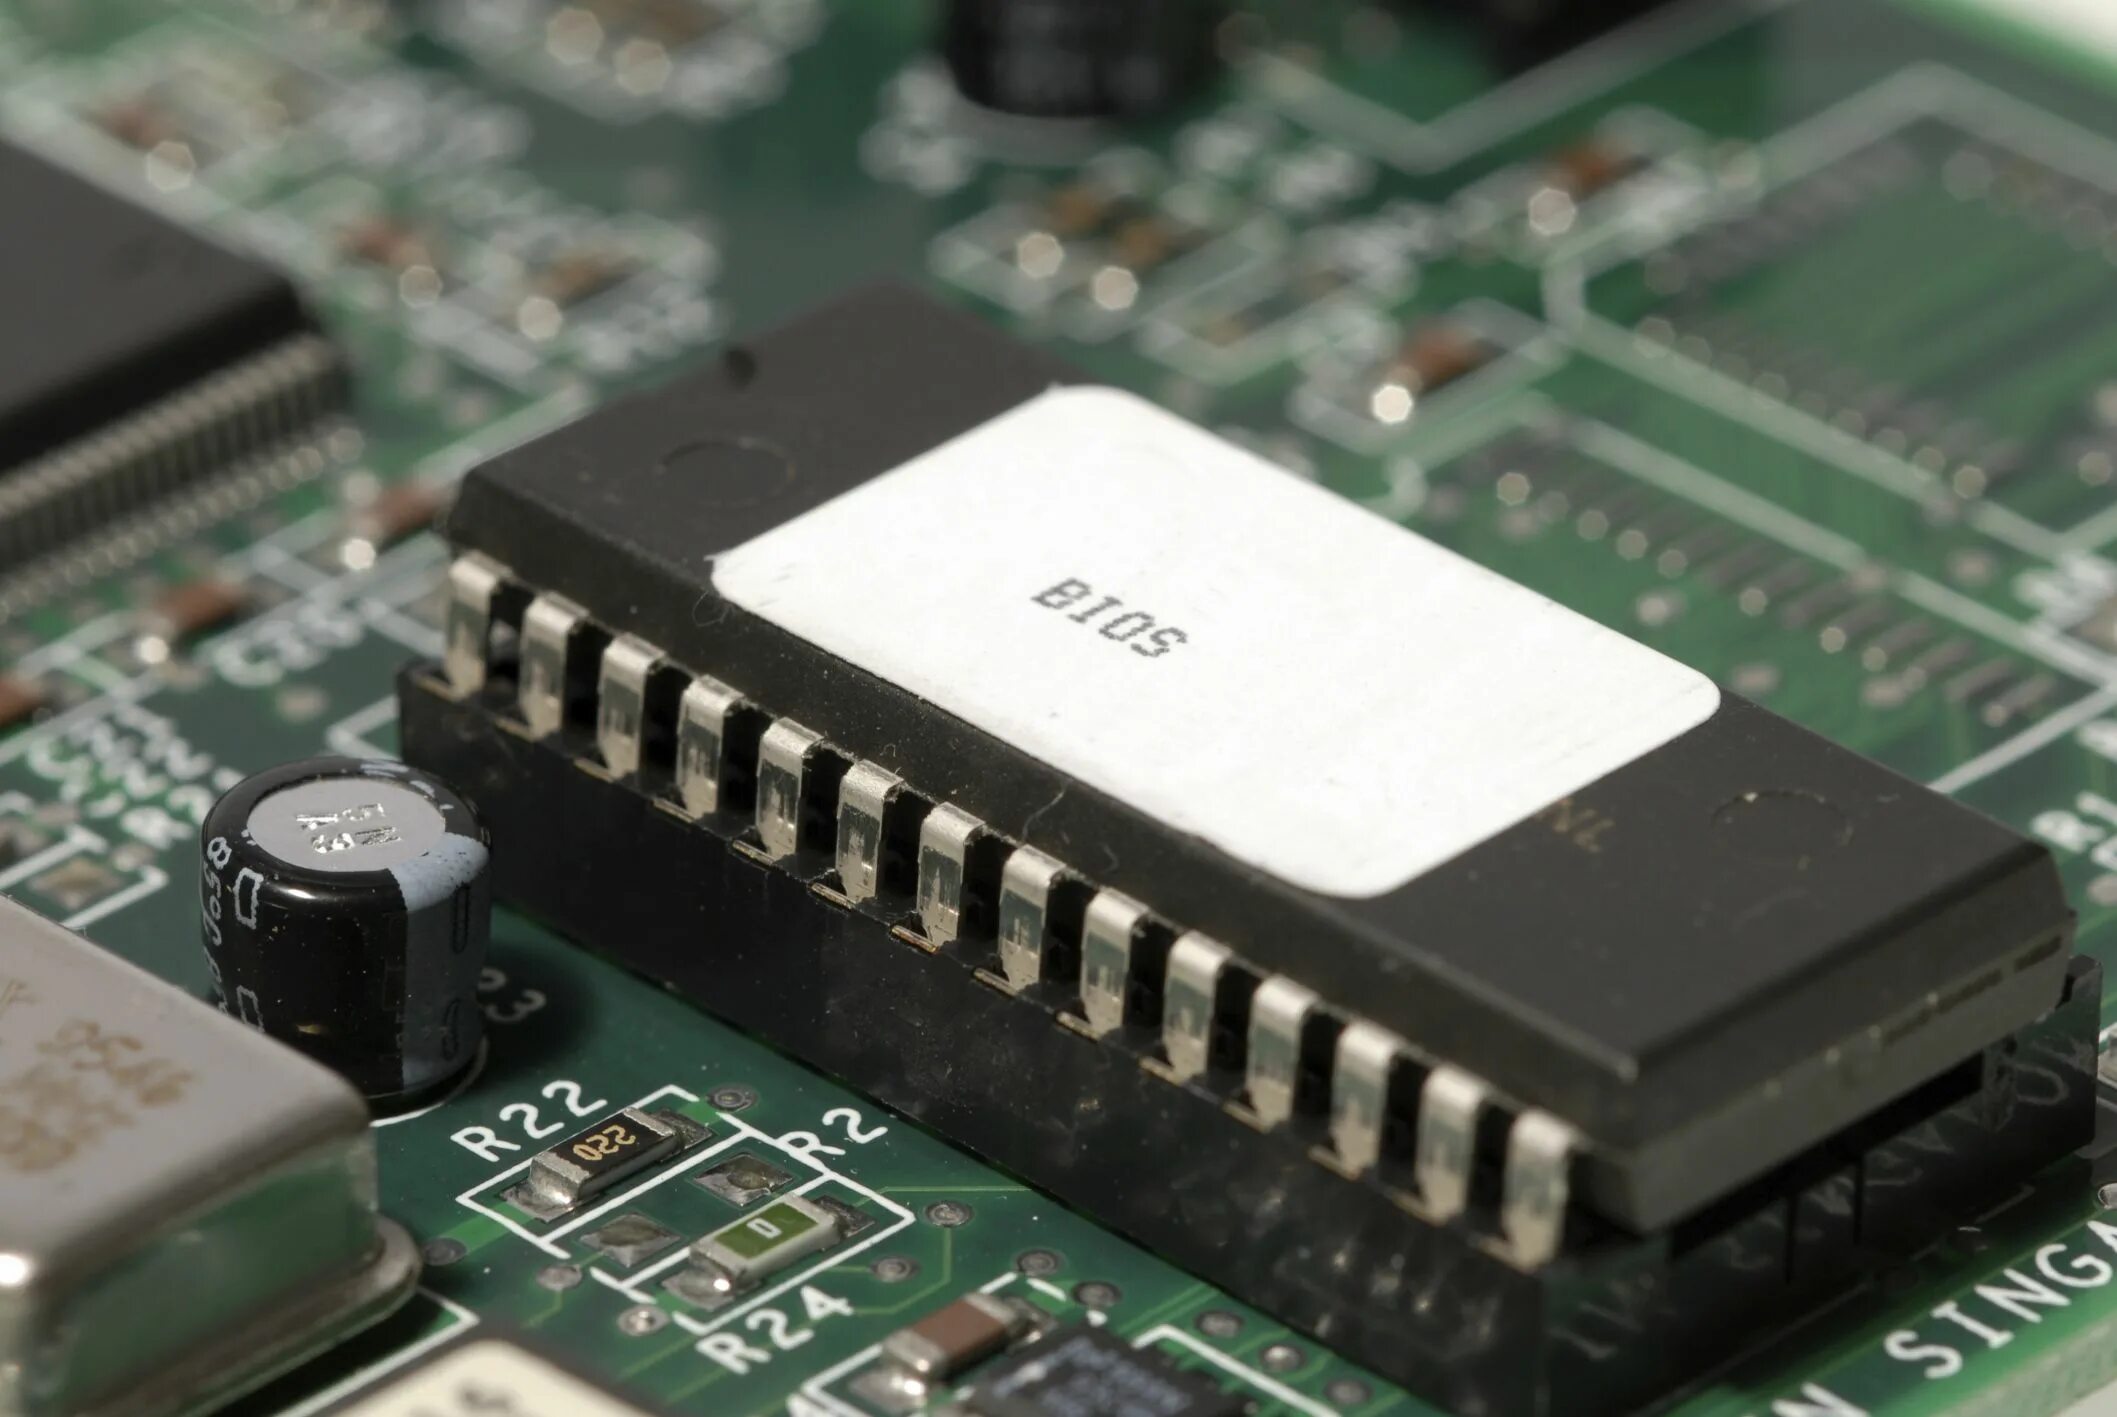 BIOS память. Микросхема ПЗУ BIOS. Flash памяти биос. Микросхема ROM BIOS.